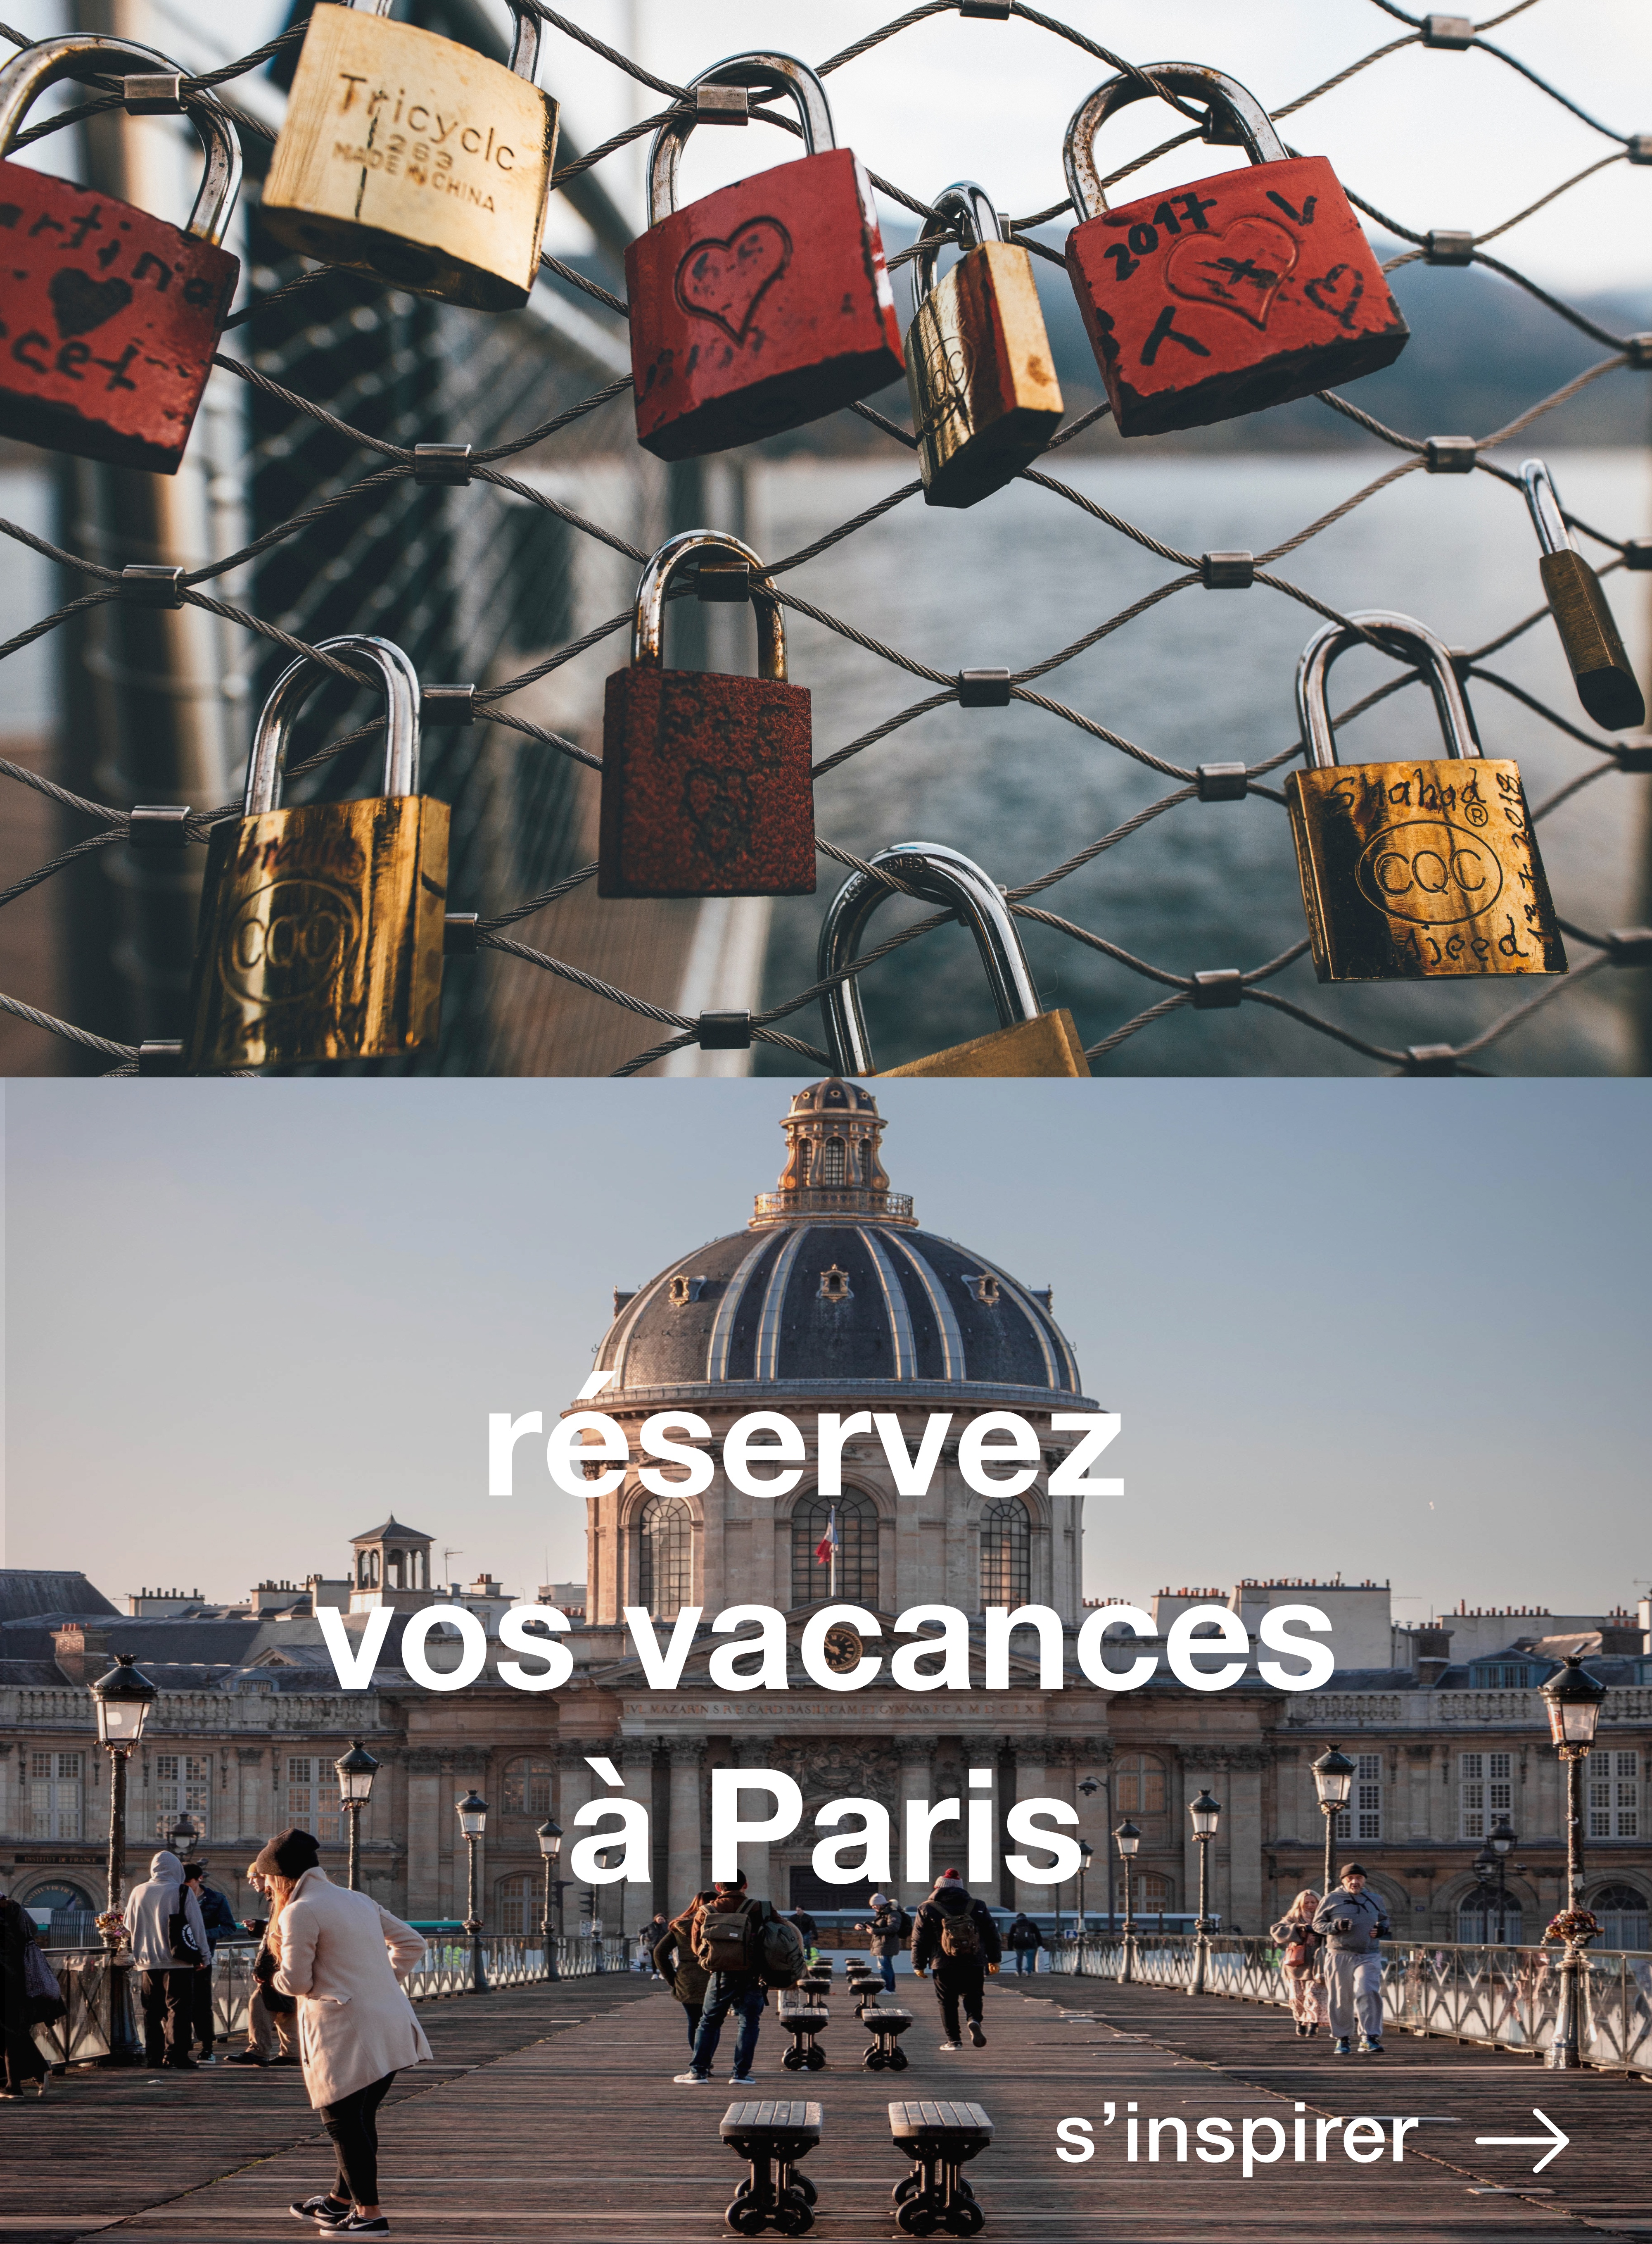 Le premier magasin officiel des JO de Paris 2024 a ouvert - Vivre paris